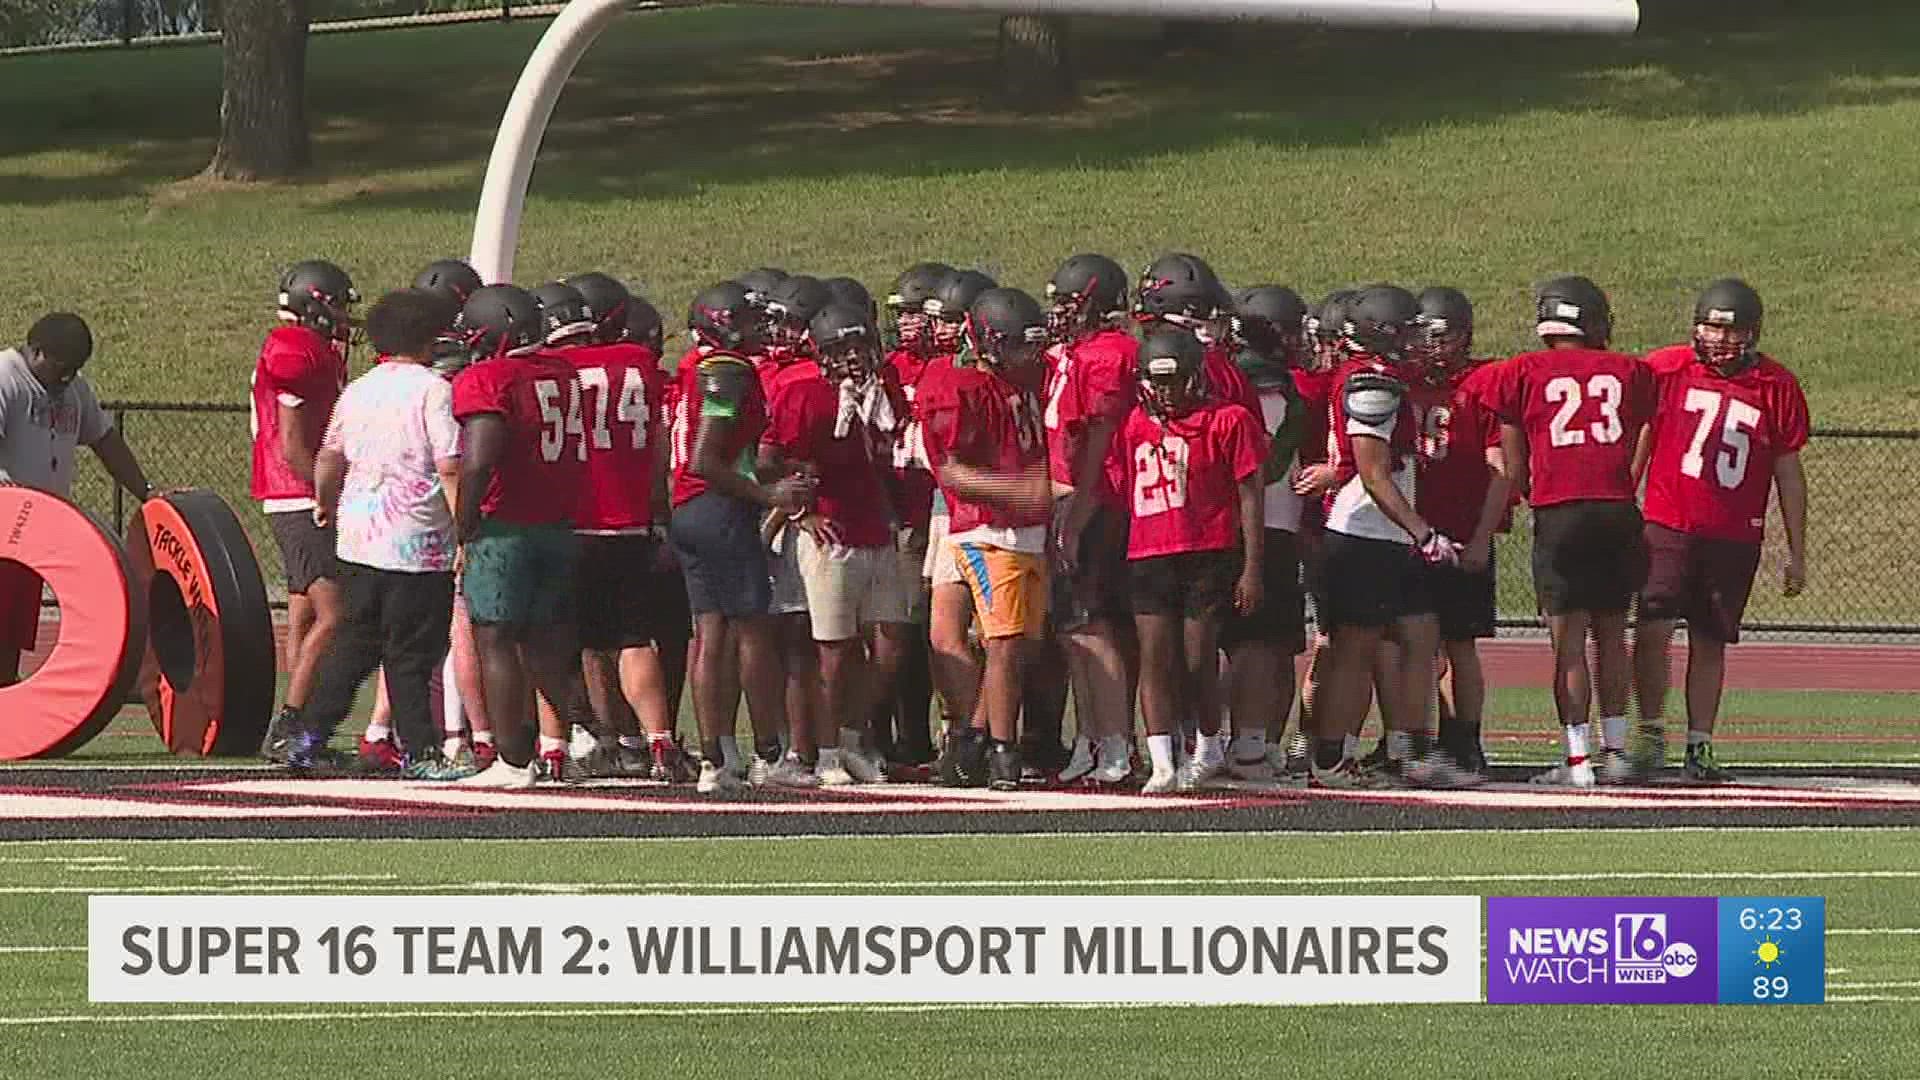 Super 16 Team 2: Williamsport Millionaires